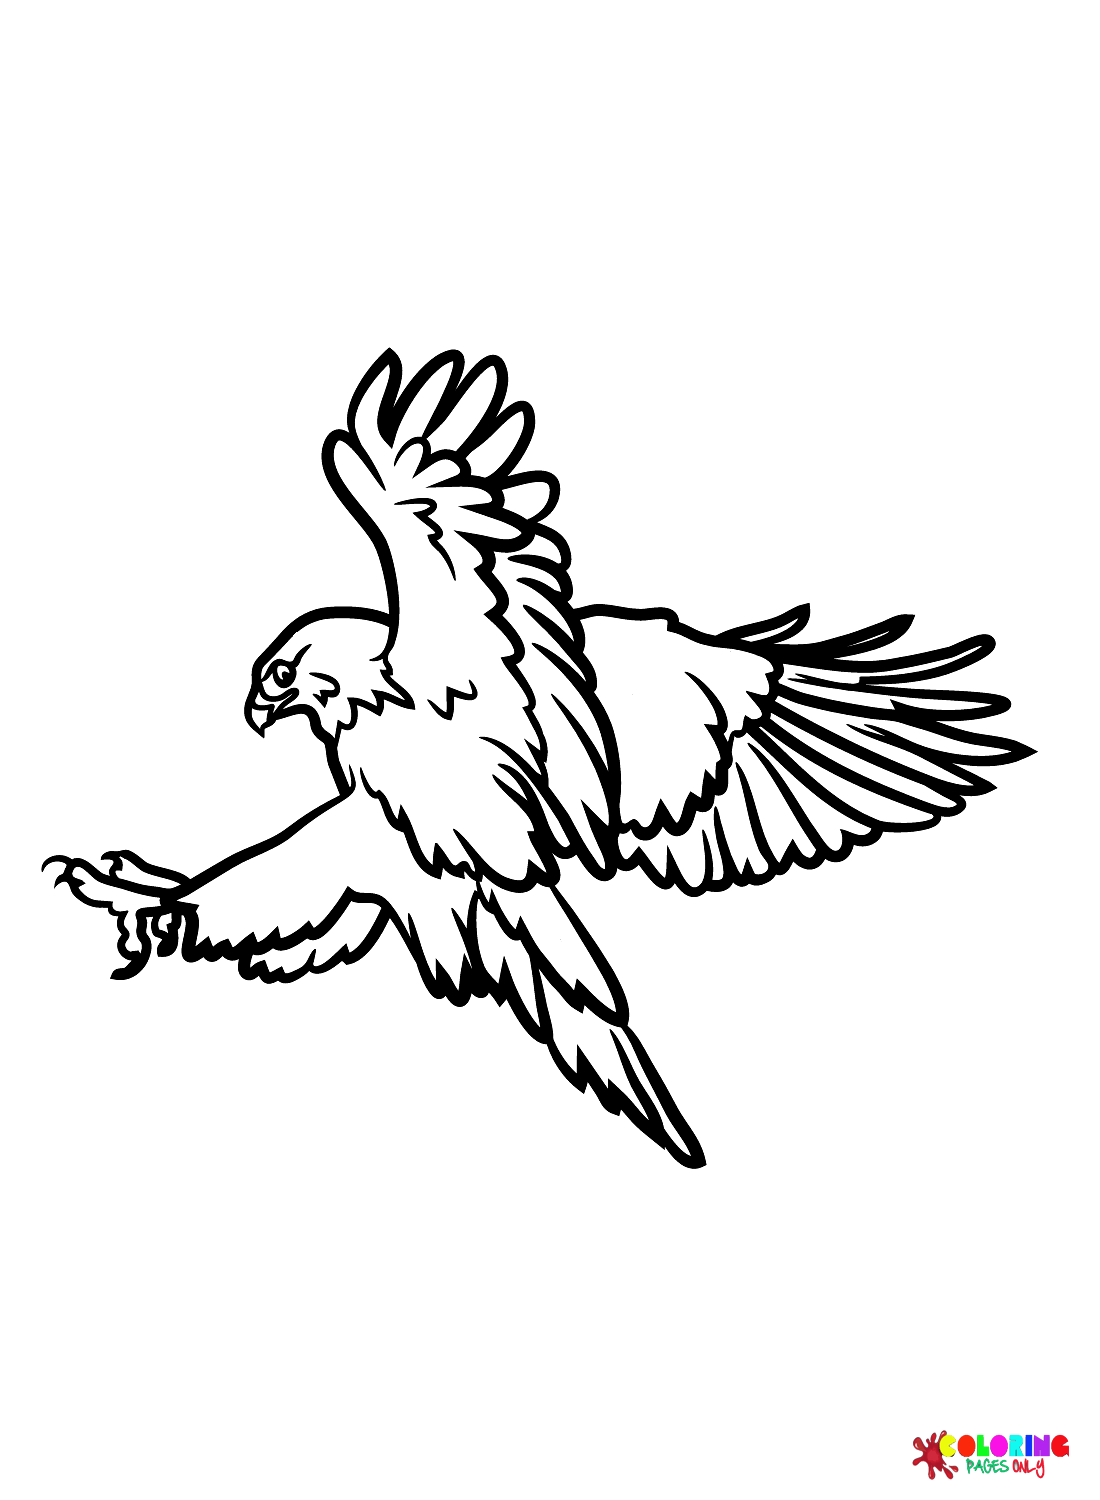 Imprimir halcón de halcones